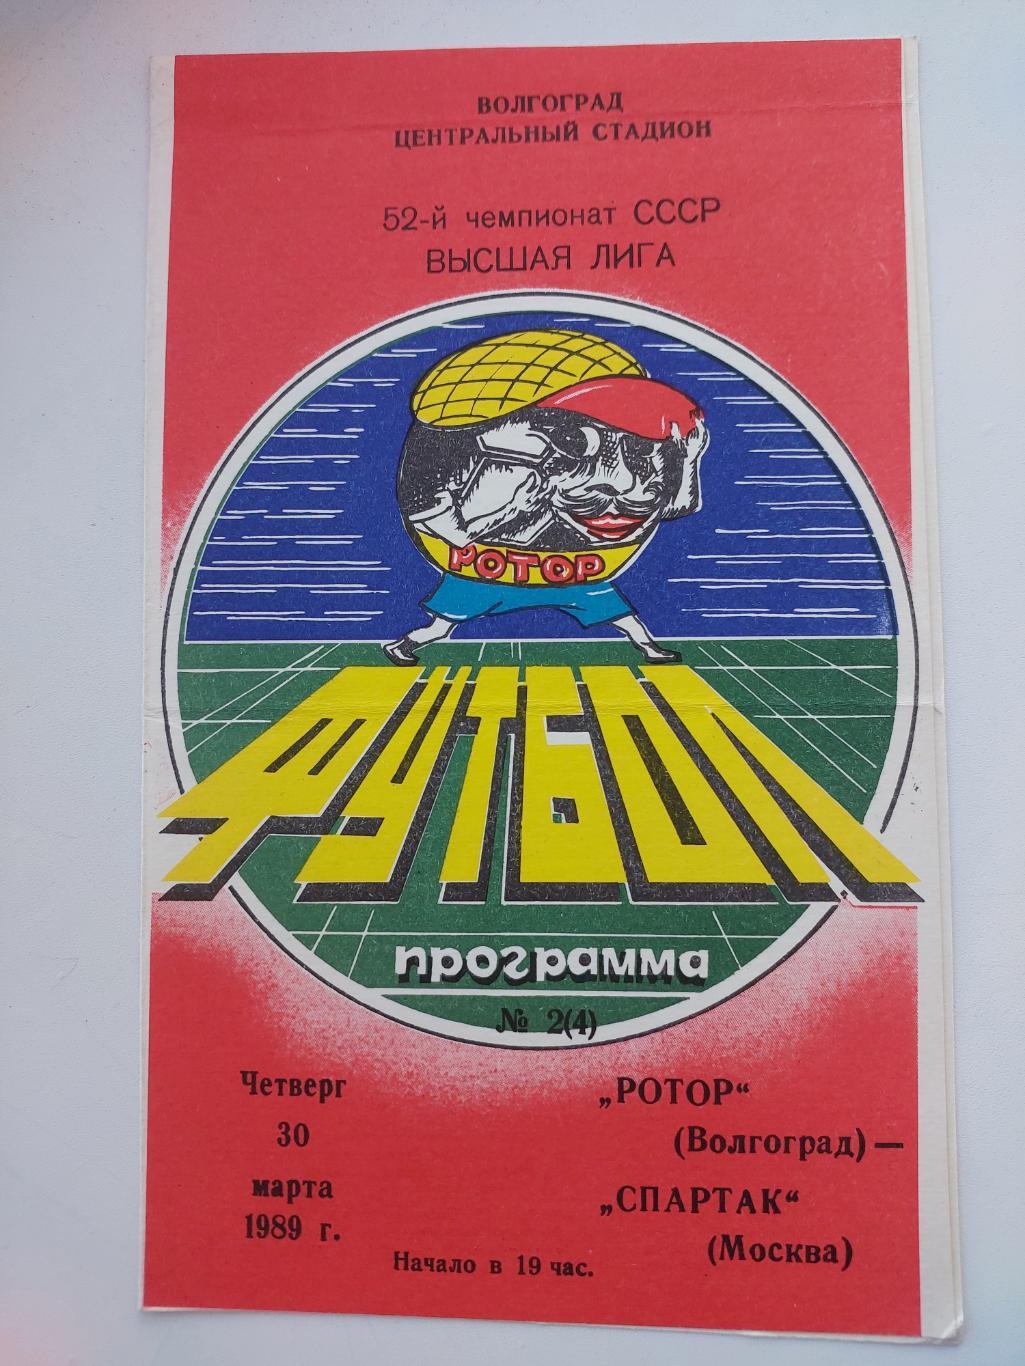 Ротор (Волгоград) - Спартак. 30.03.1989г. 52-й Чемпионат СССР.